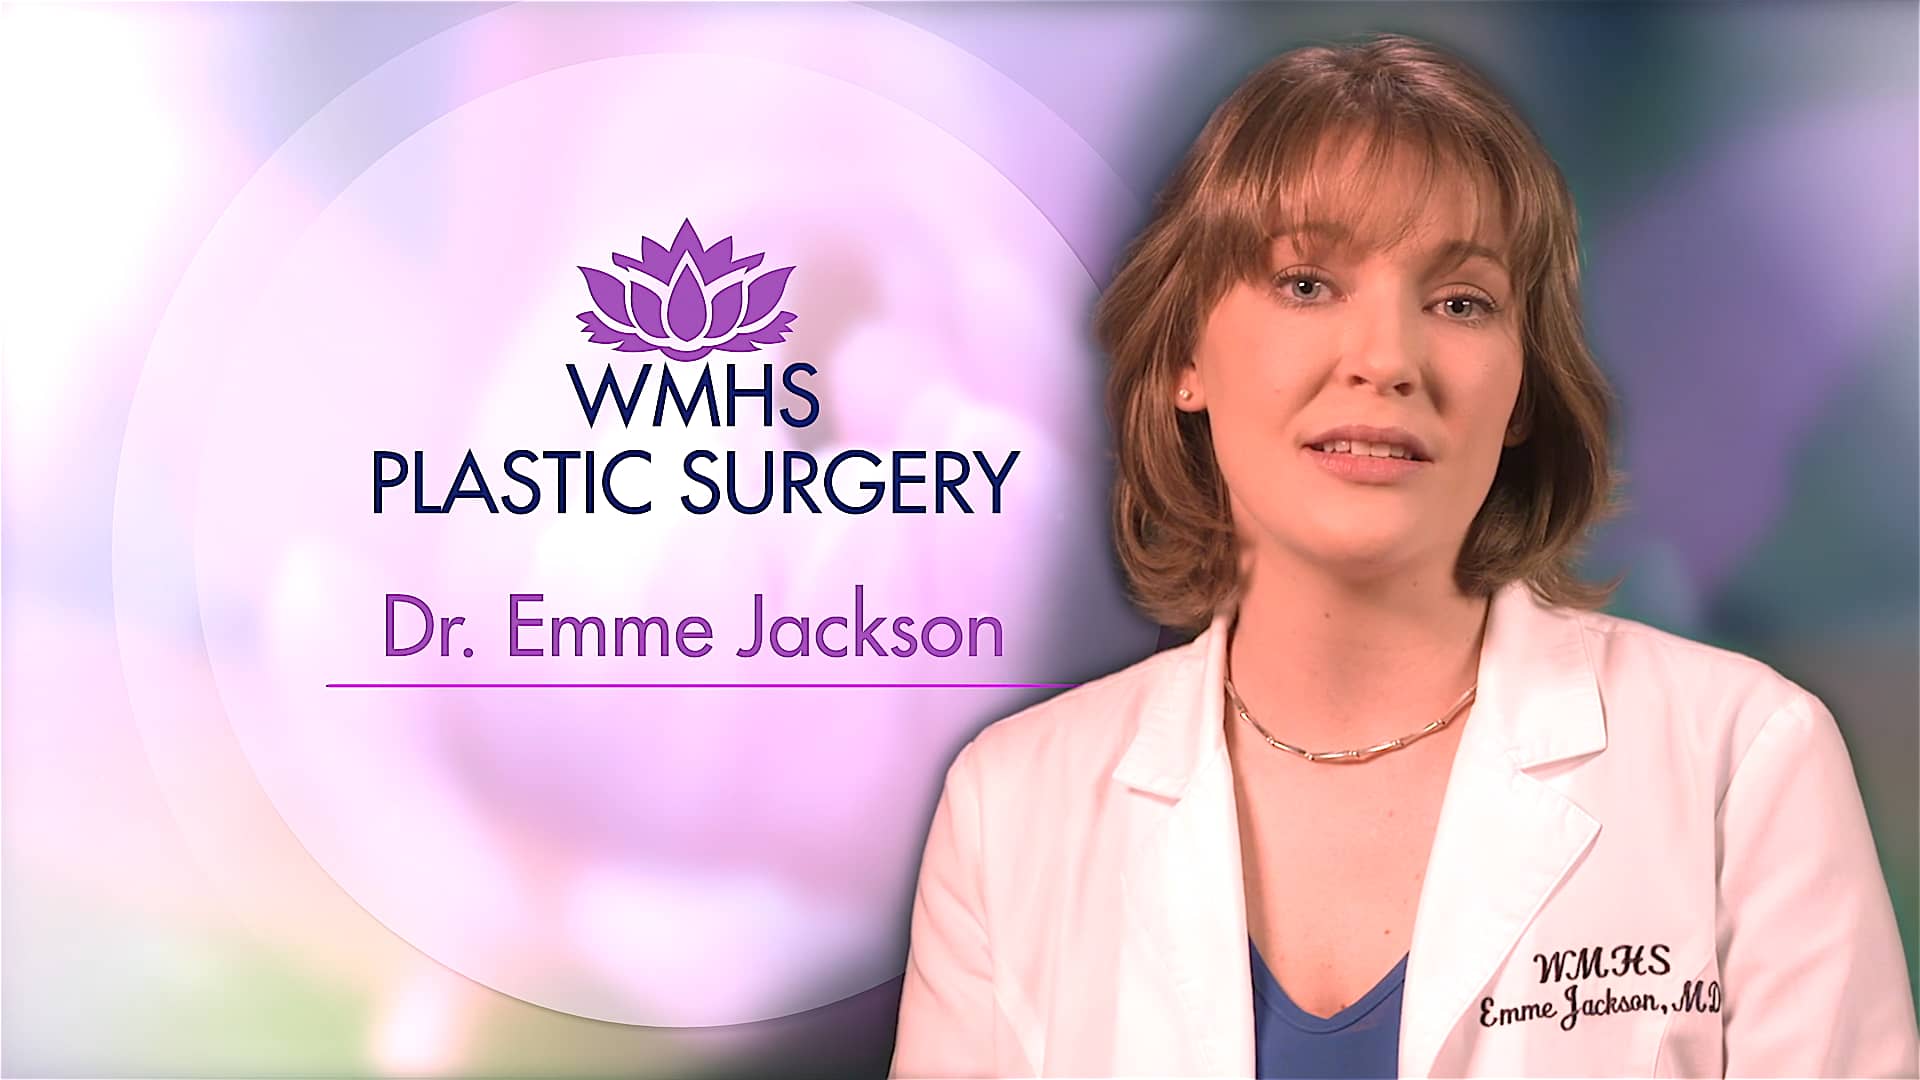 WMHS Plastic Surgery / Dr. Emme Jackson - Web Introduction on Vimeo